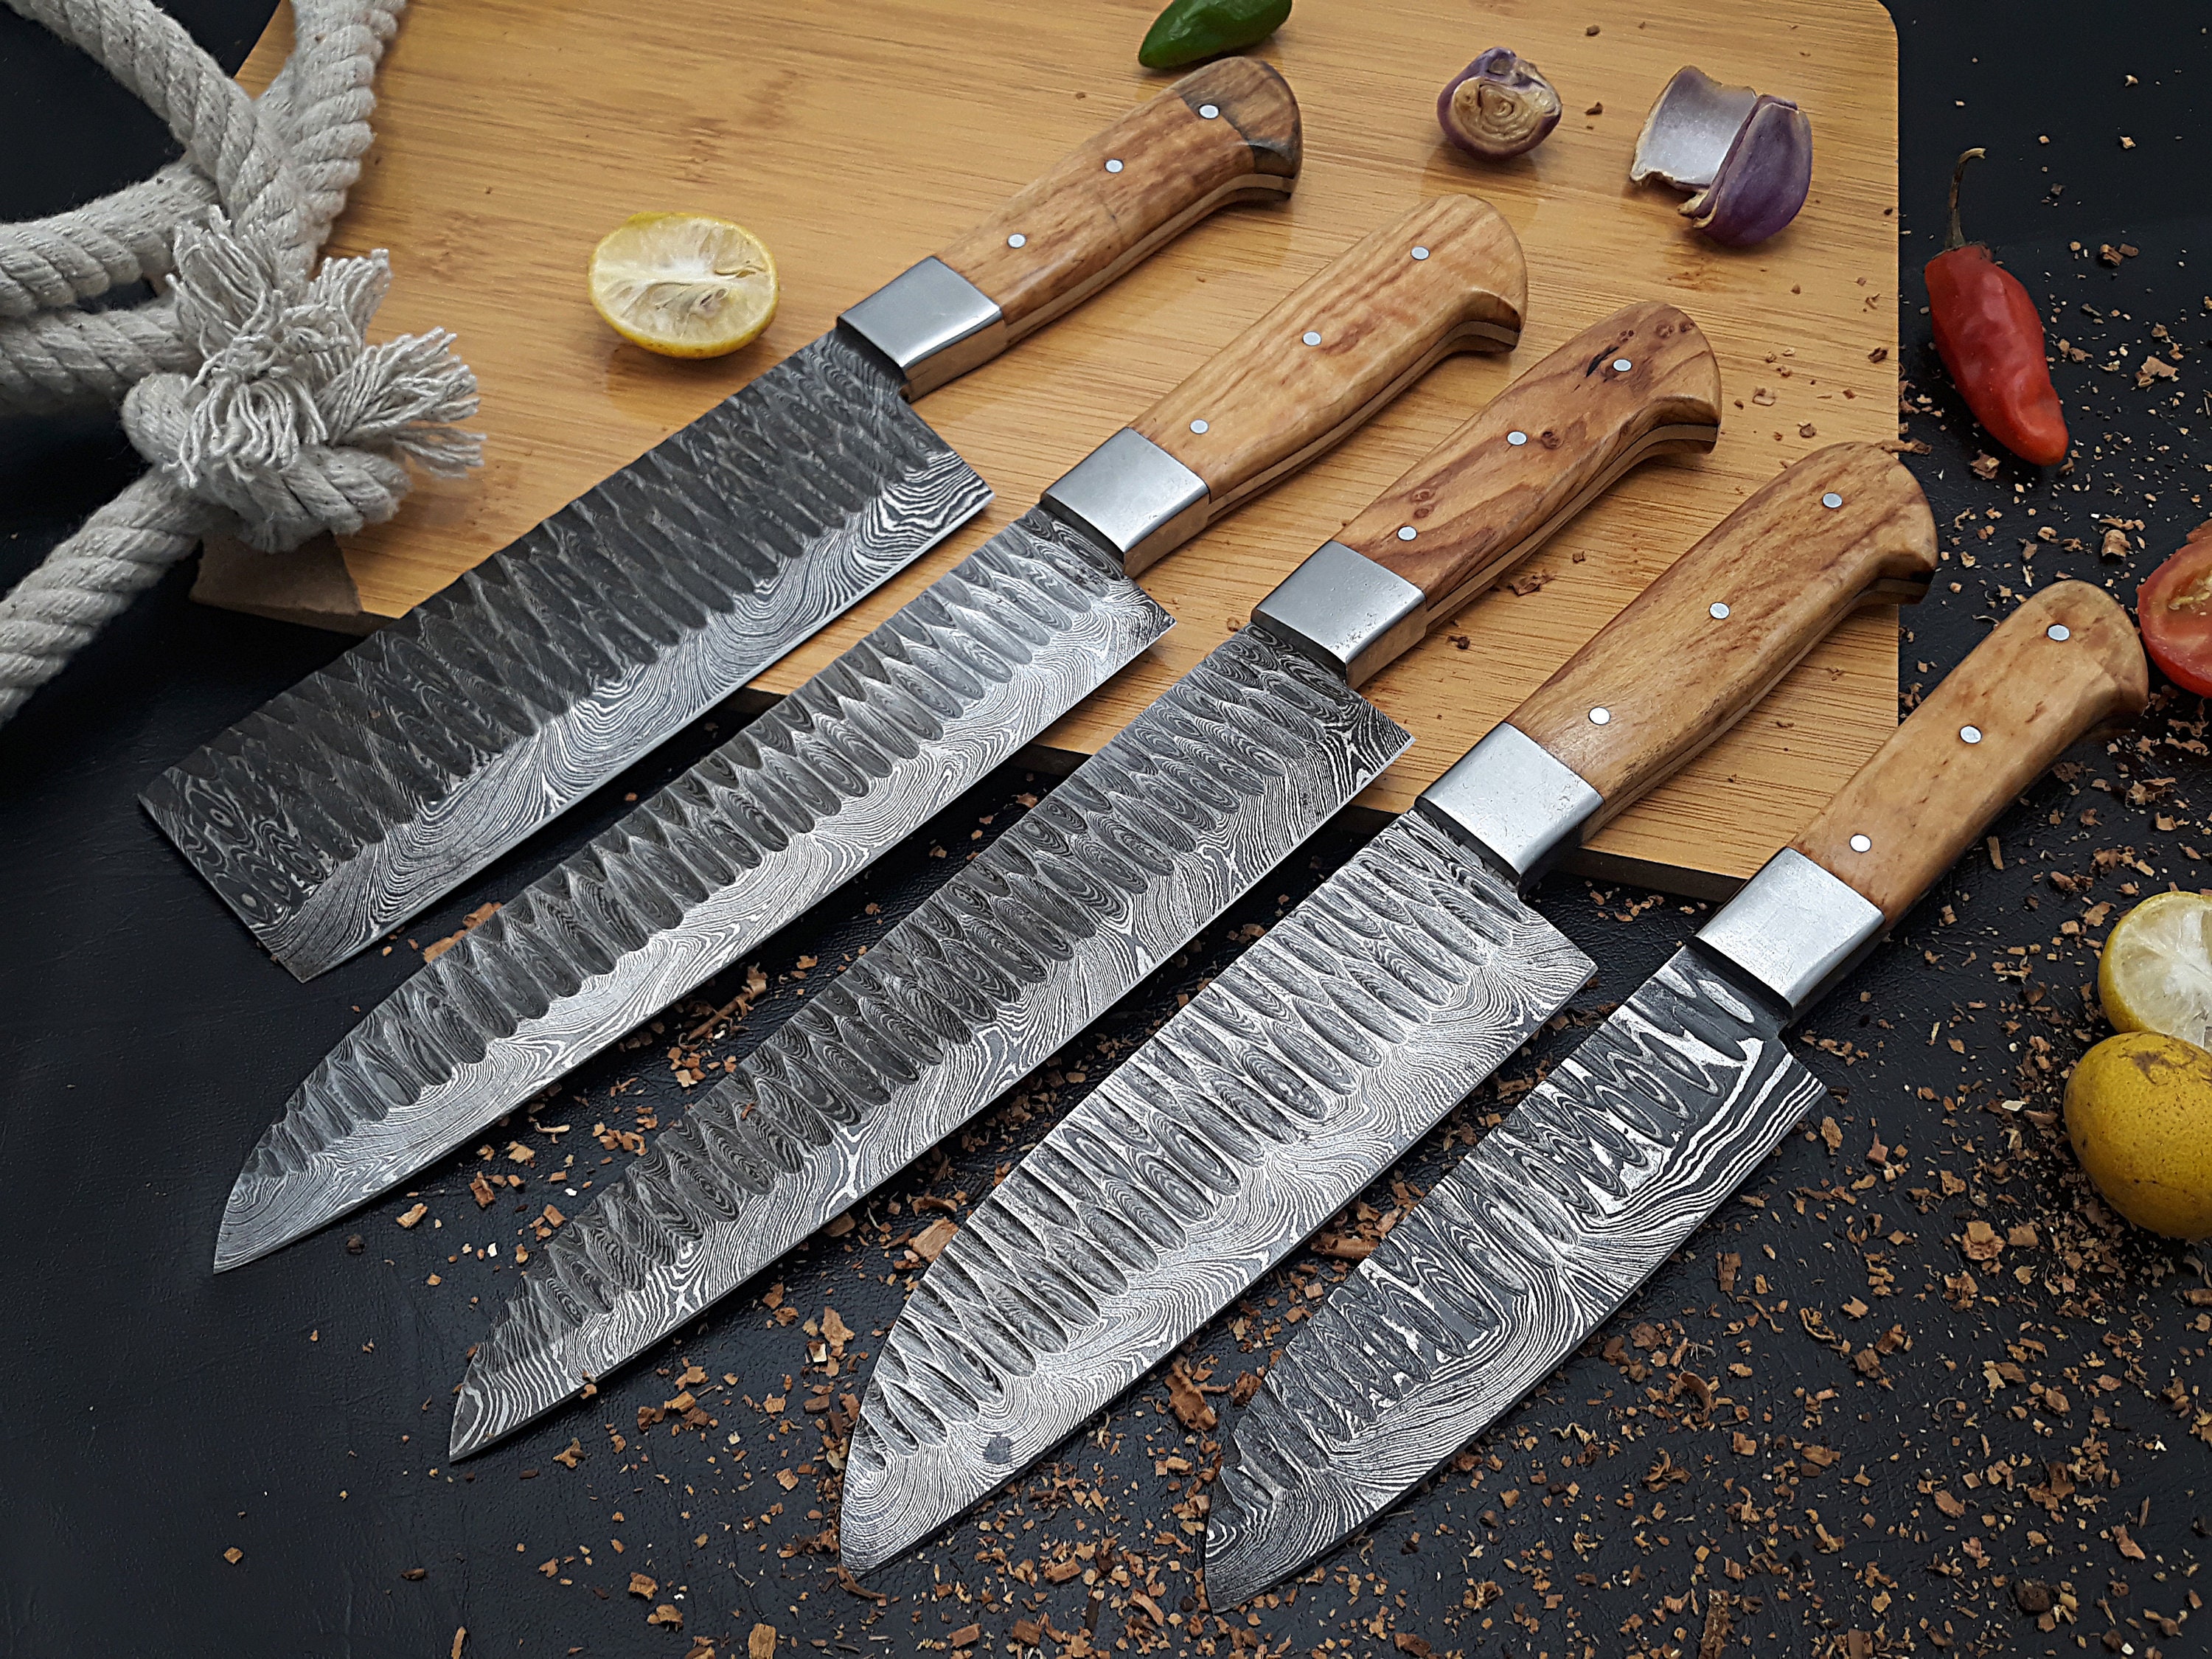 ReaNea Gold Steak Knives Set, Serrated Knife, Stainless Steel Sharp Dinner  Knife 